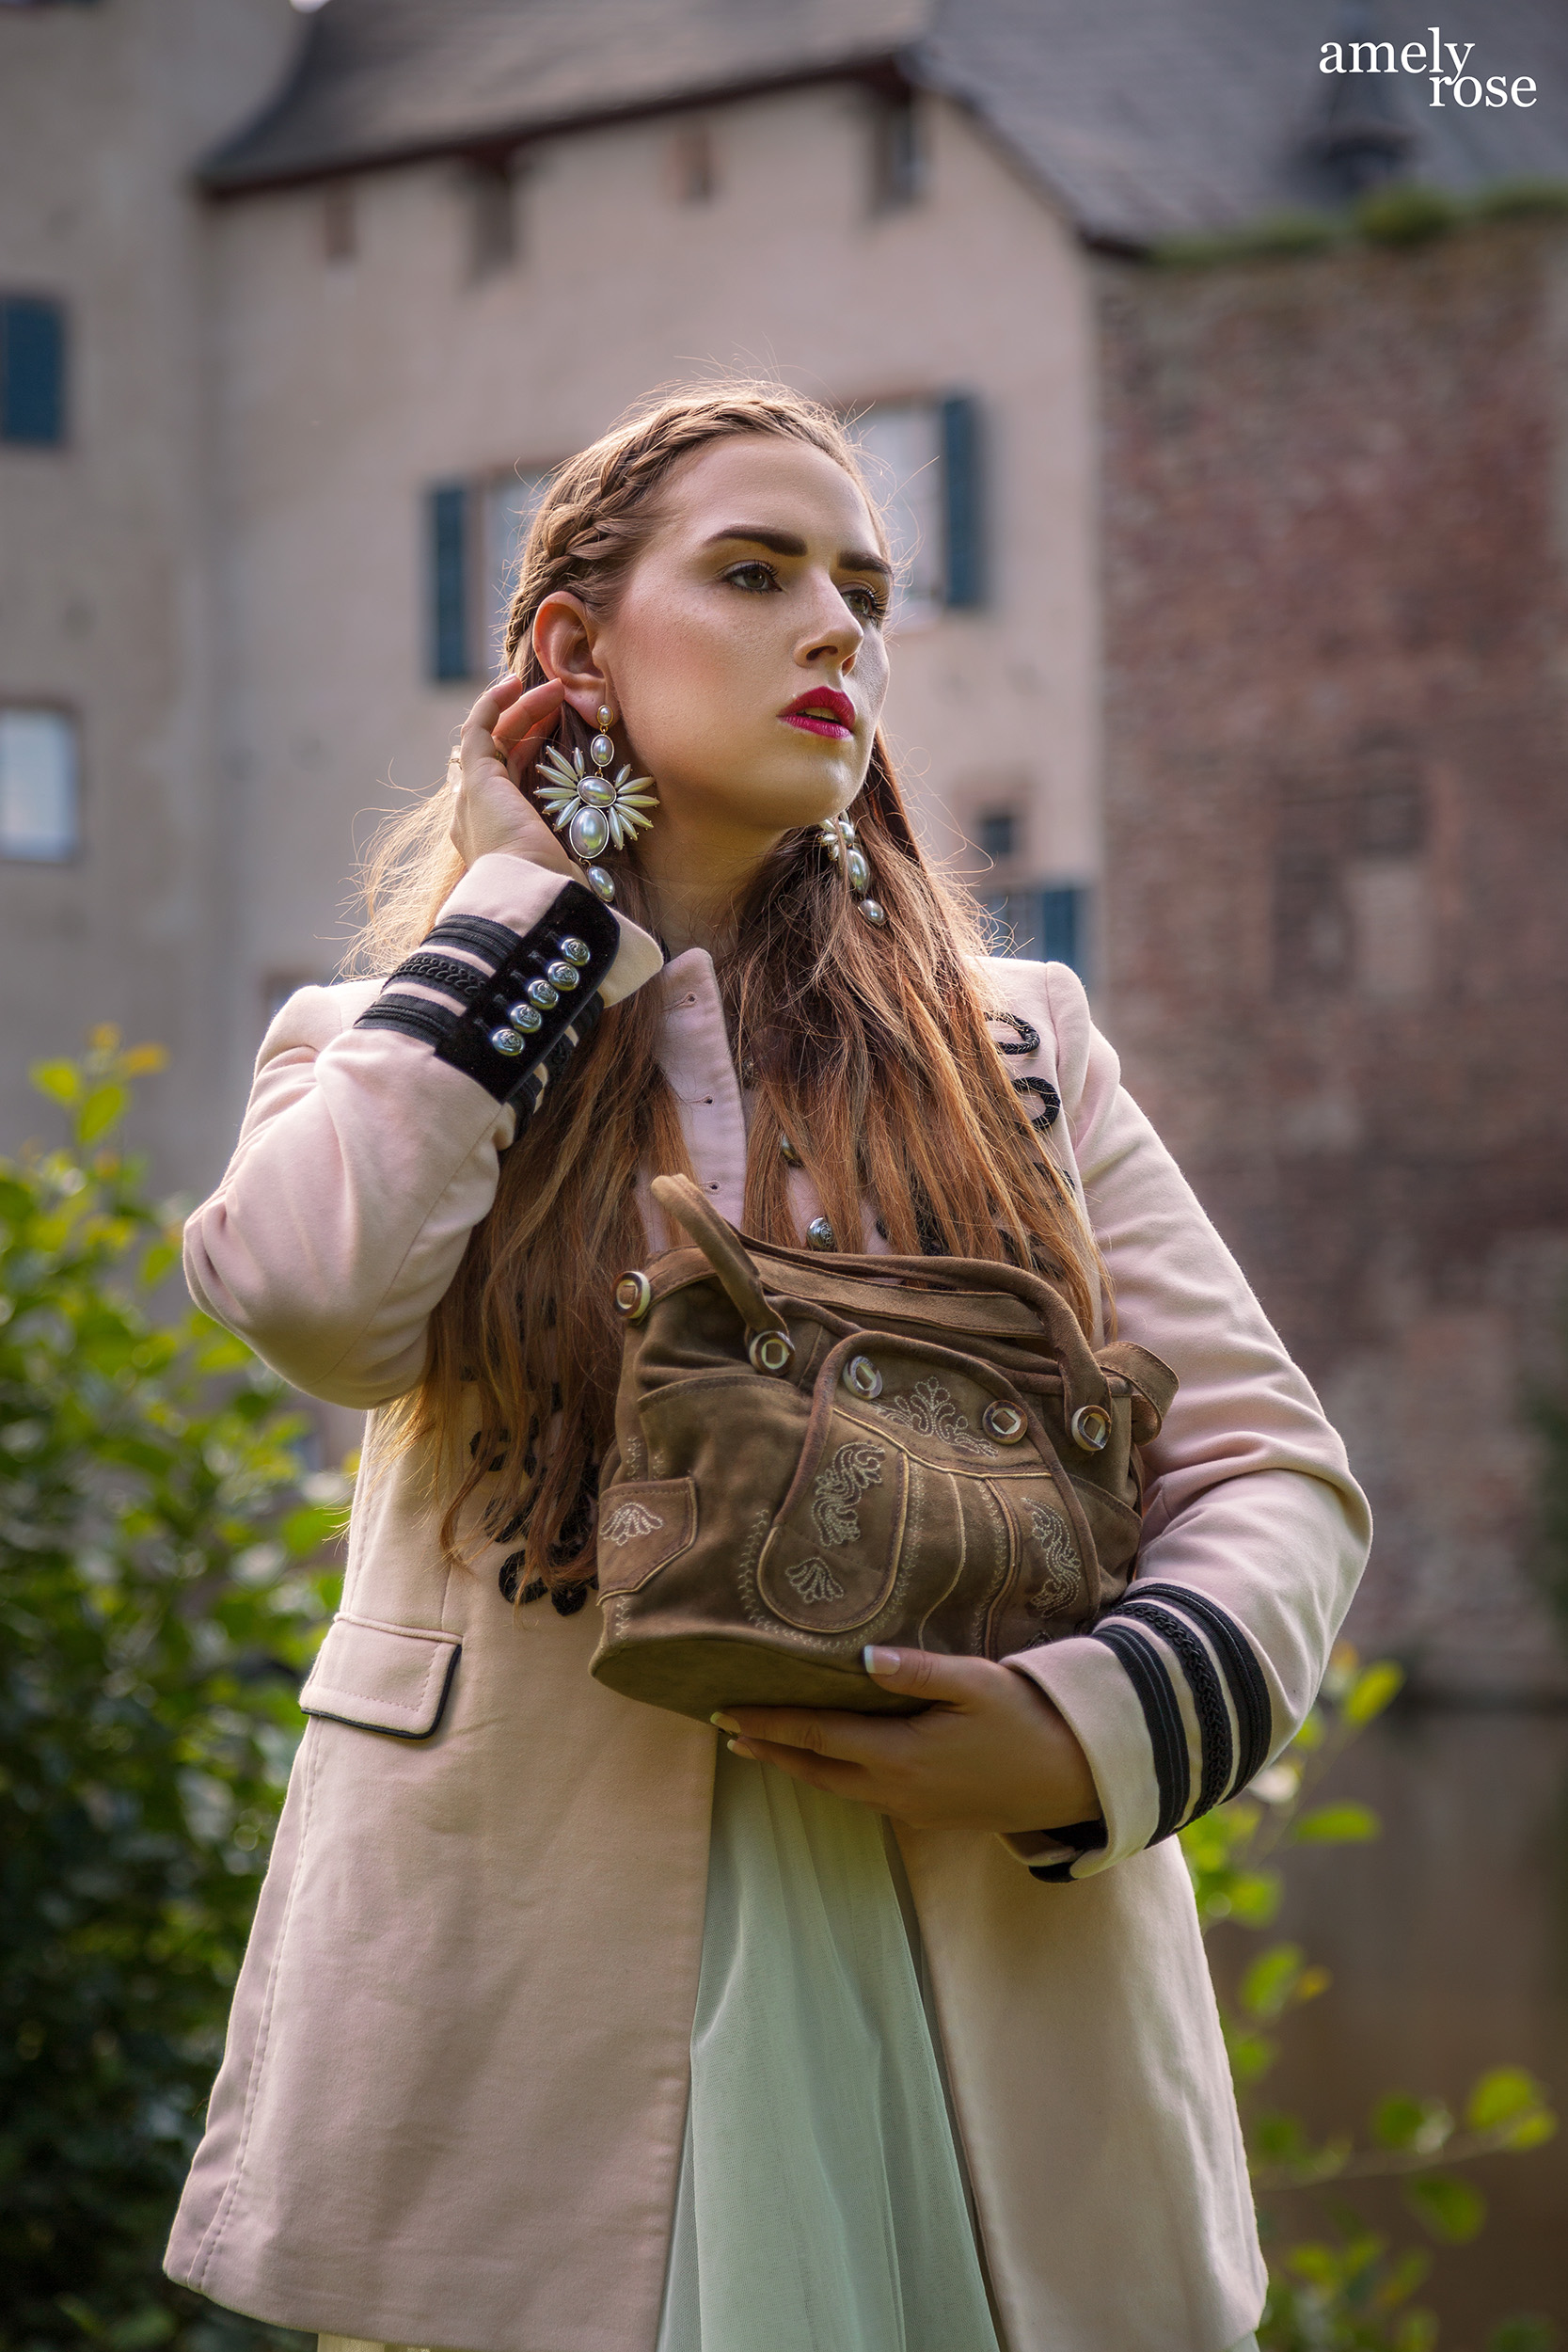 Amely rose zählt zu deutschland bekanntesten german influencer und fashion blogger zeigt ihren oktoberfestlook, ohne dirndl und lederhosen auf den wies'n mit tollen trachten accessoires wie der tasche von hosndaschn